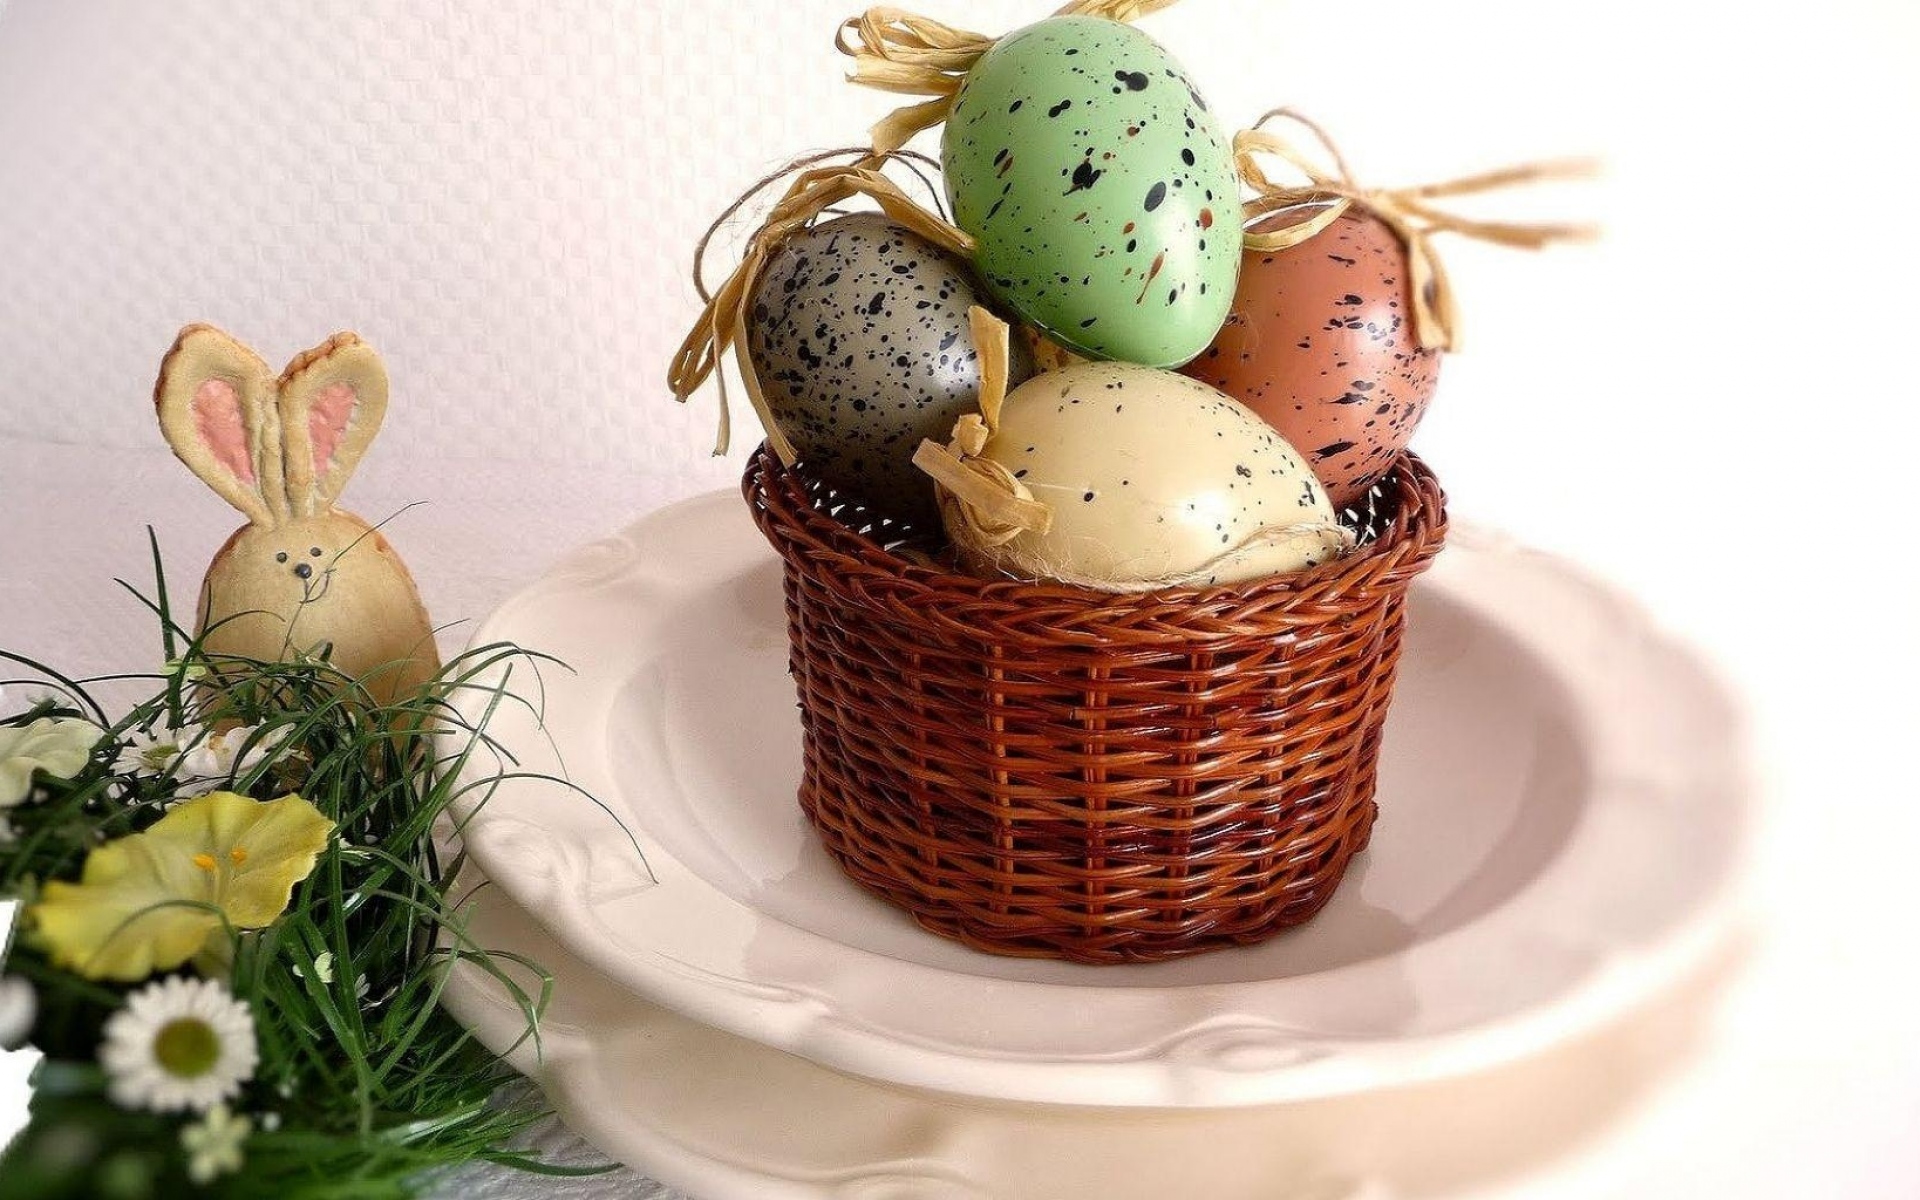 Картинки Паша, праздник, корзина, яйца, кролик, игрушка, цветы, травы, тарелки фото и обои на рабочий стол